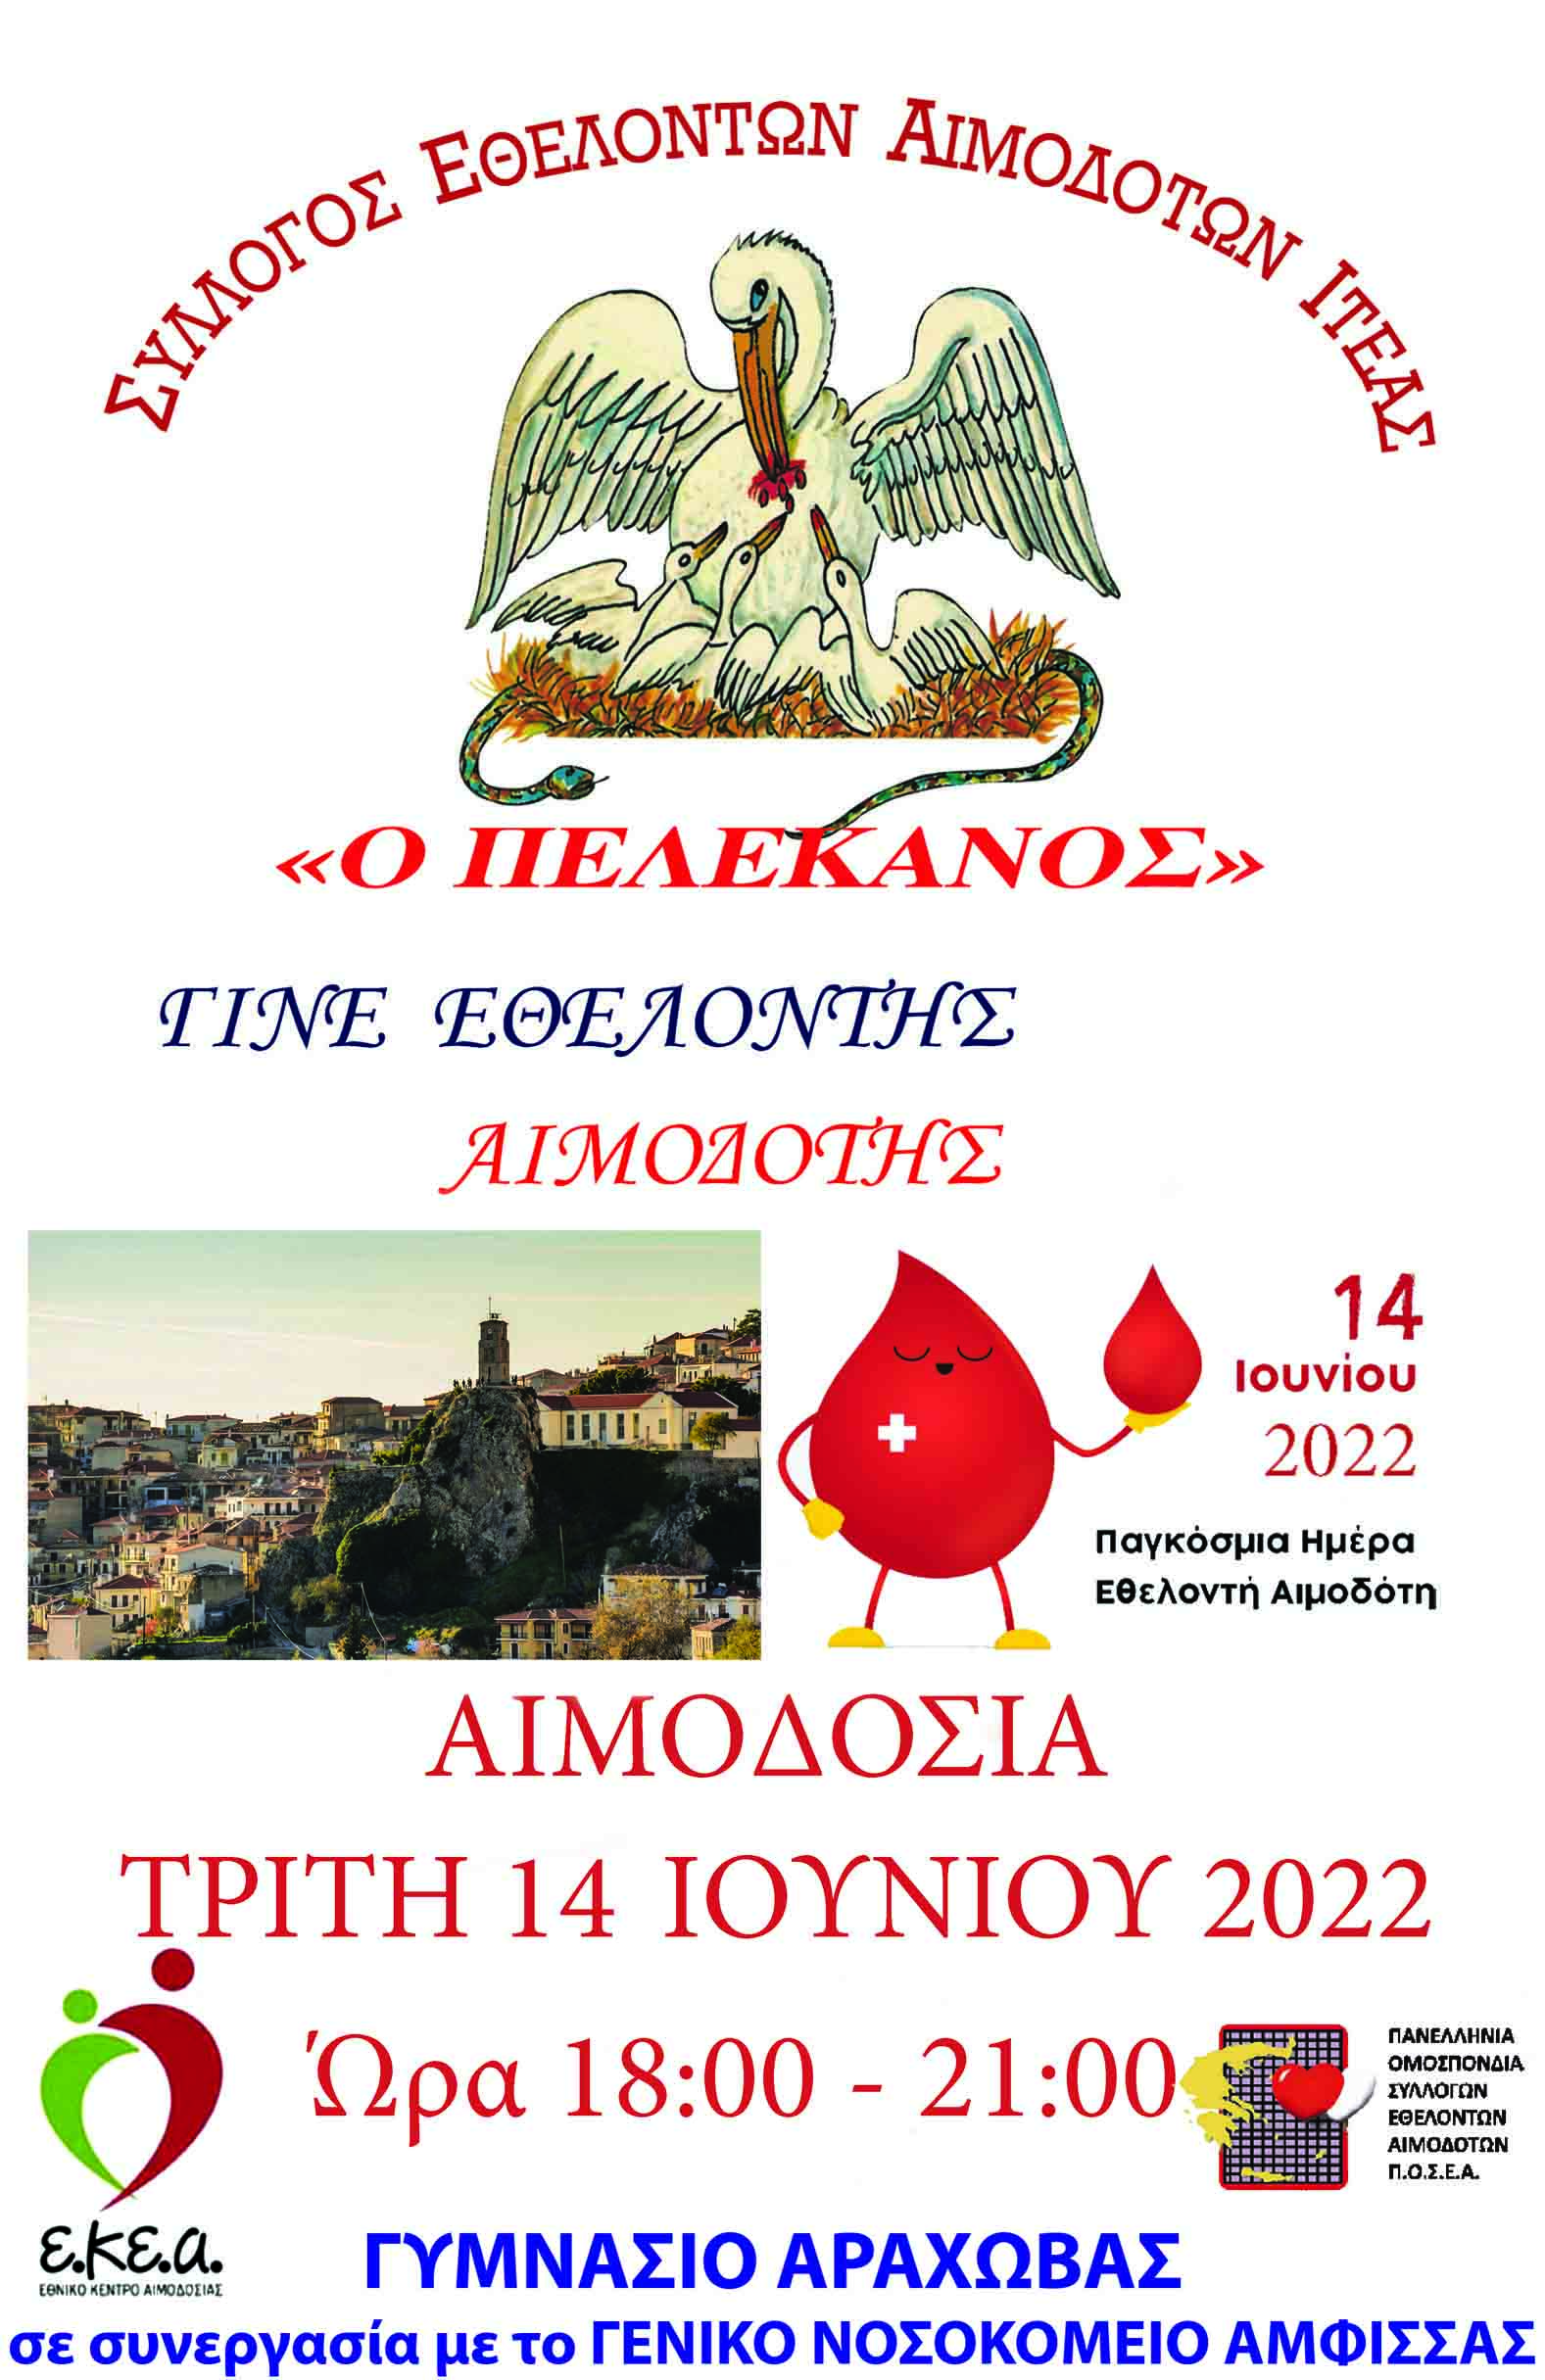 ΣΕΑ ΙΤΕΑΣ - Εθελοντική Αιμοδοσία 14 Ιουνίου στα πλαίσια της Παγκόσμιας Ημέρας του Εθελοντή Αιμοδότη